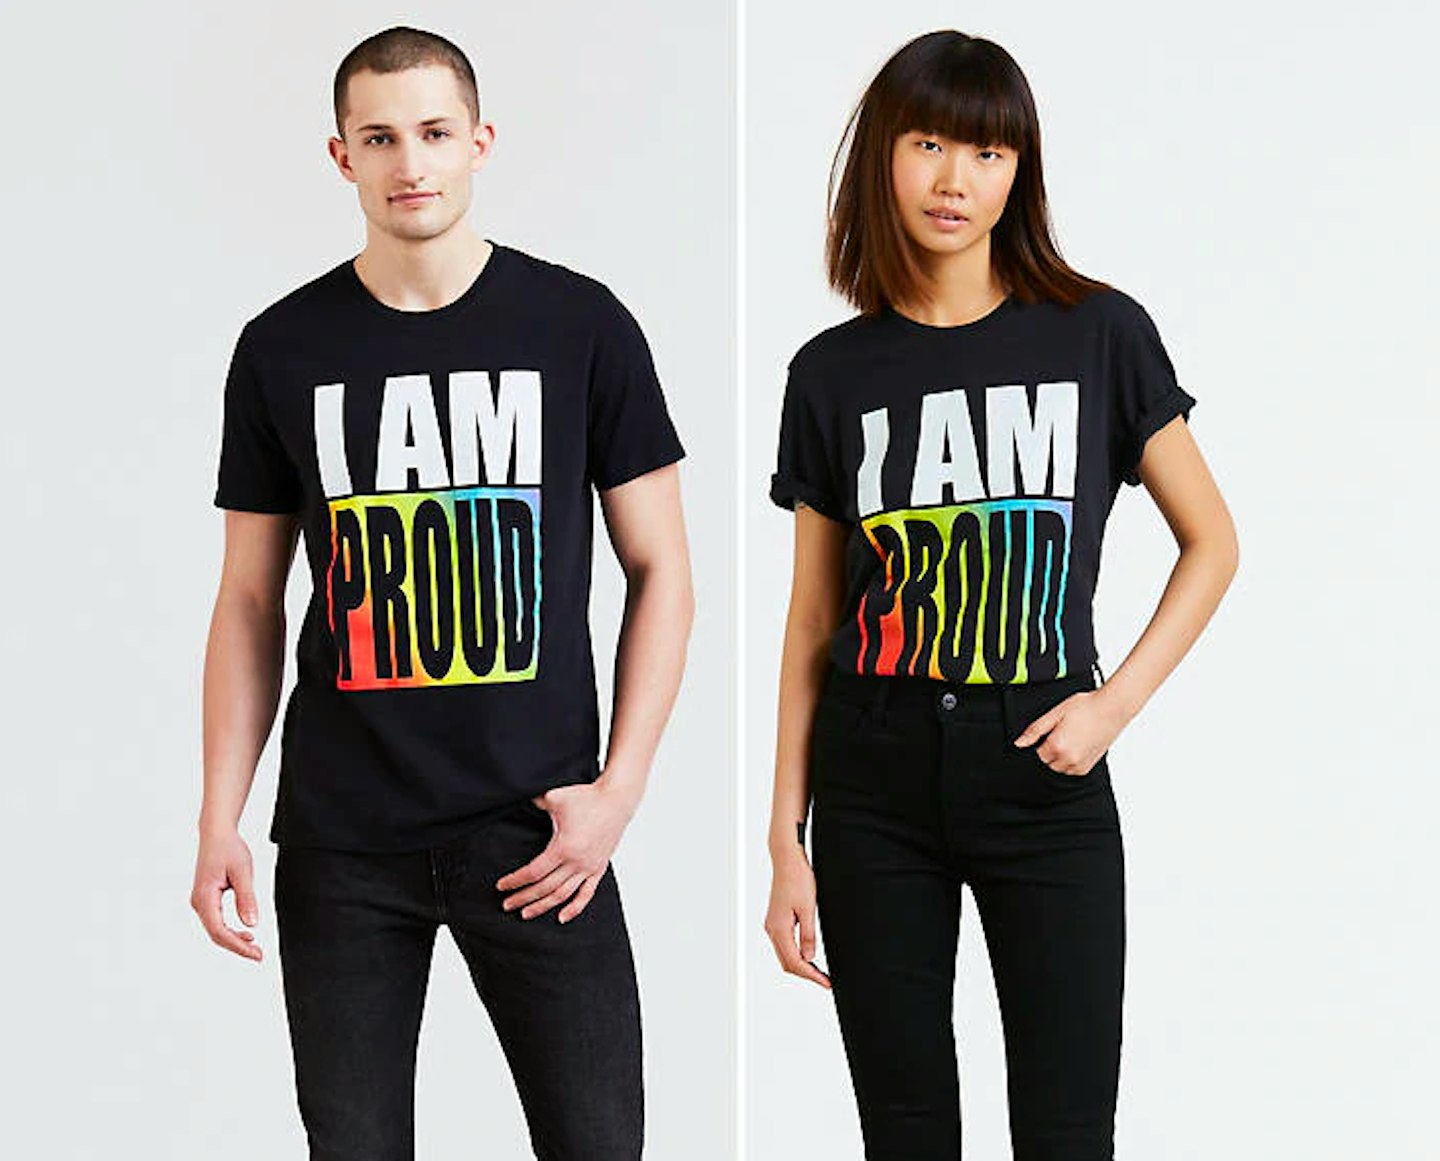 LGBTQ+ pride month fashion